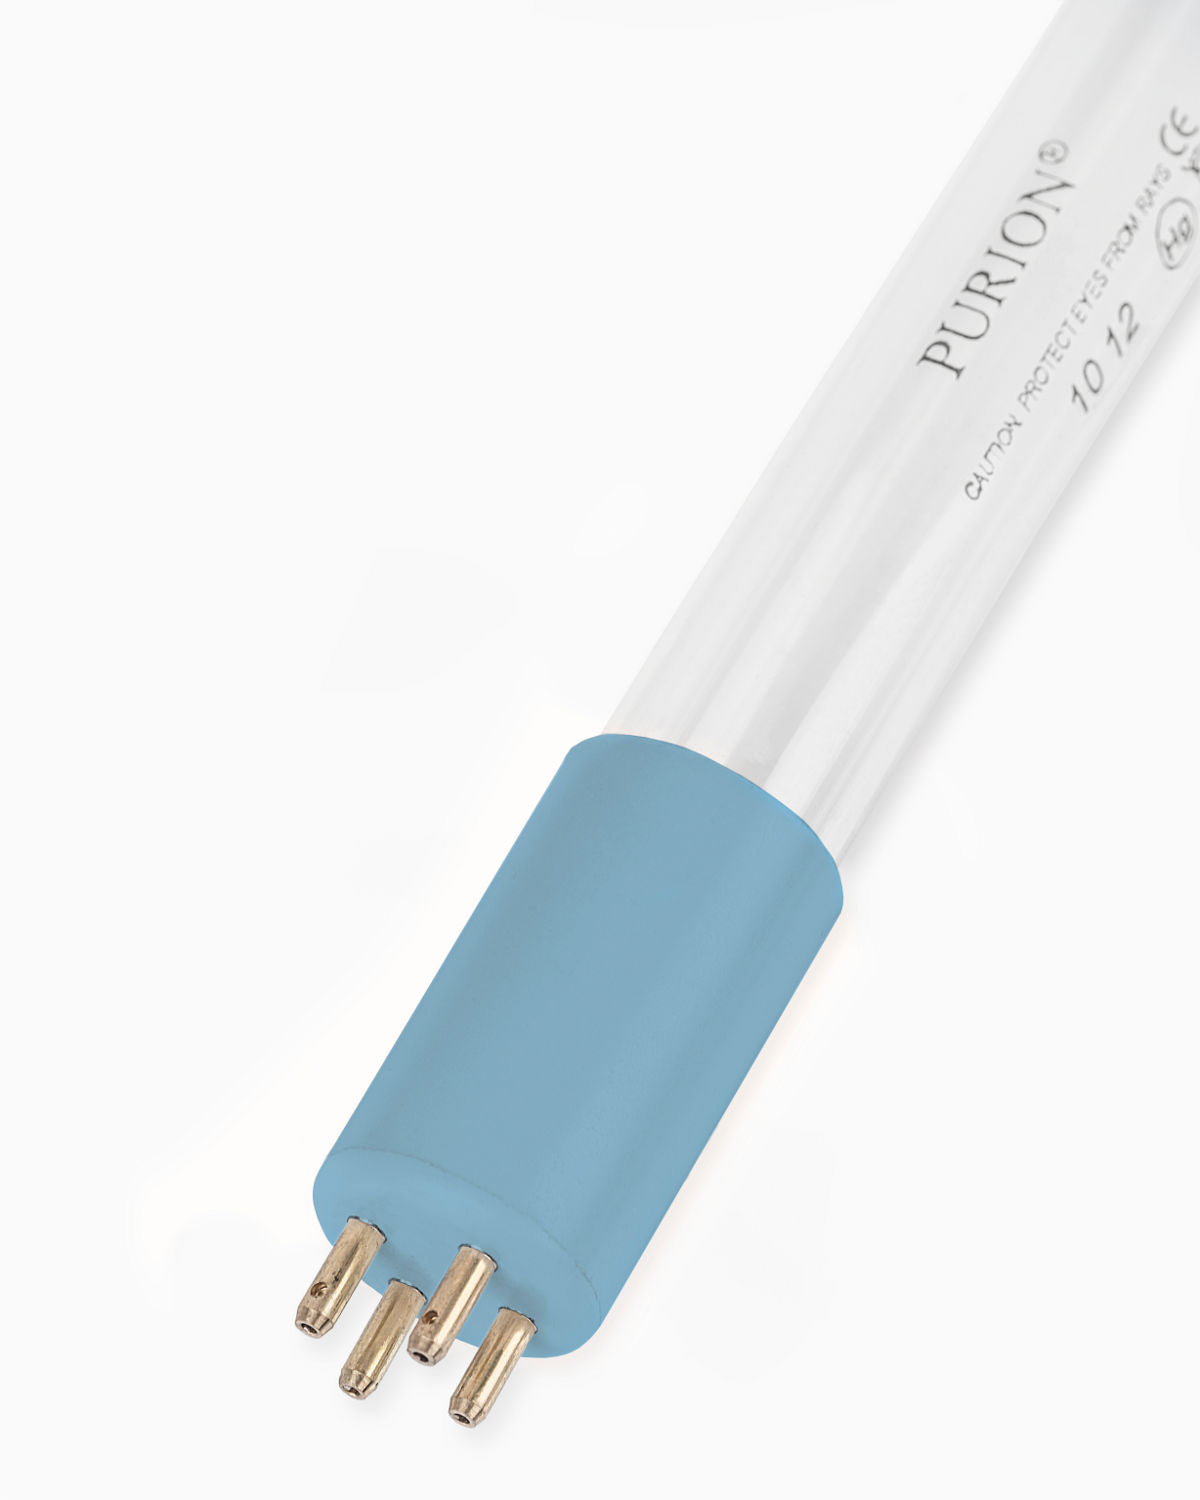 Eine blaue Lichtröhre PURION 2501 DUAL PVC-U OTC Plus der PURION GmbH zur UV-C-Desinfektion, schlicht auf weißem Hintergrund dargestellt.